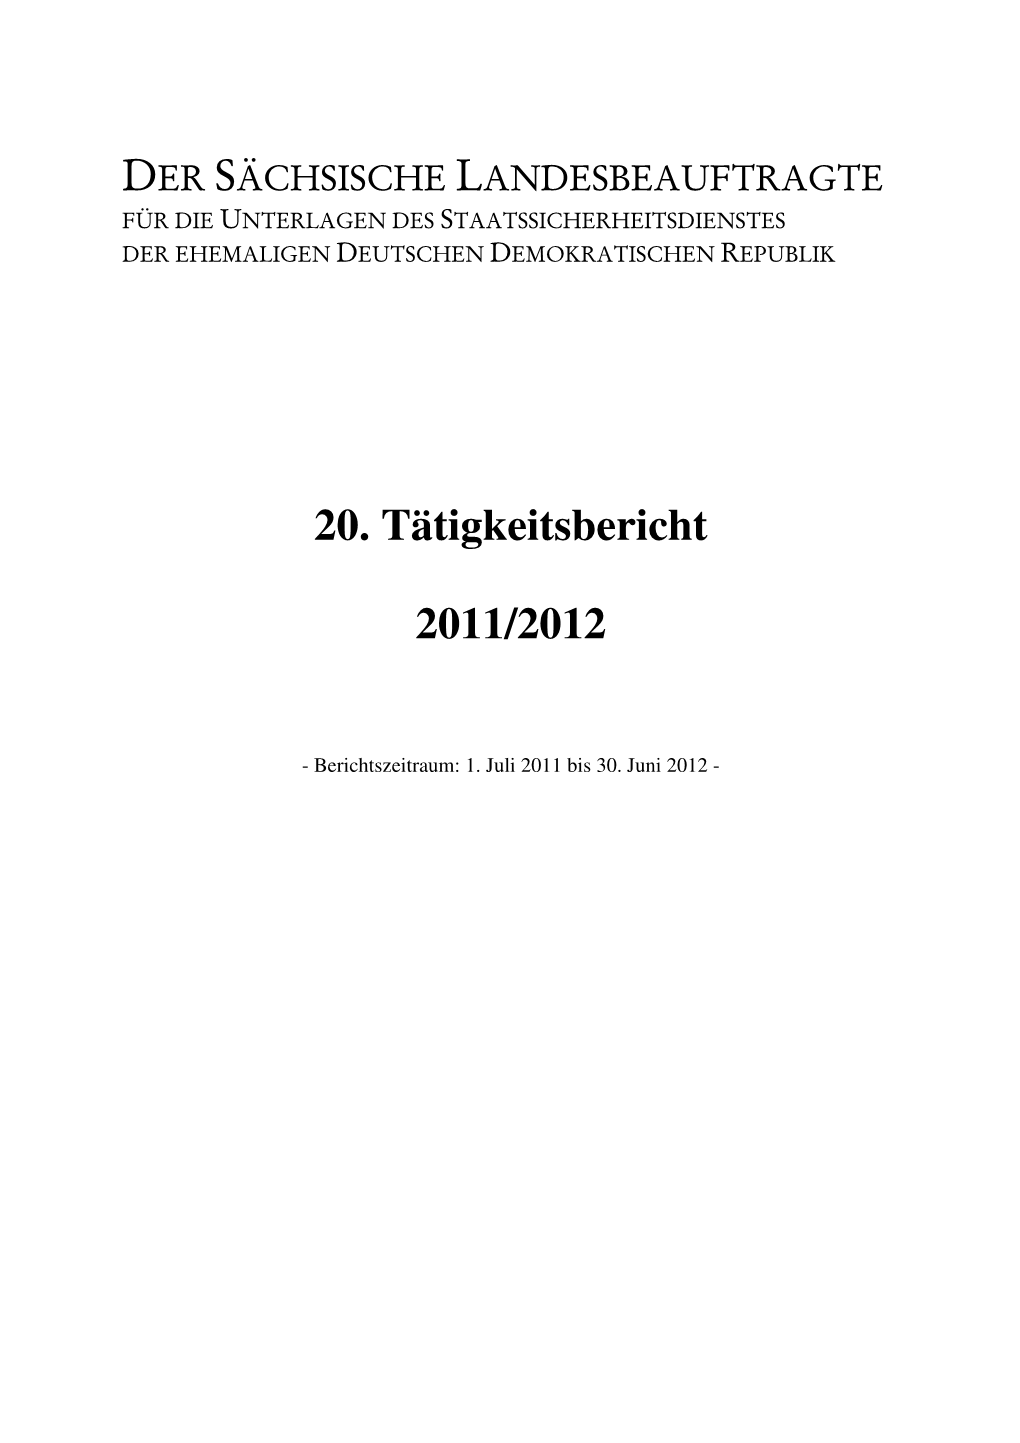 20. Tätigkeitsbericht 2011/2012